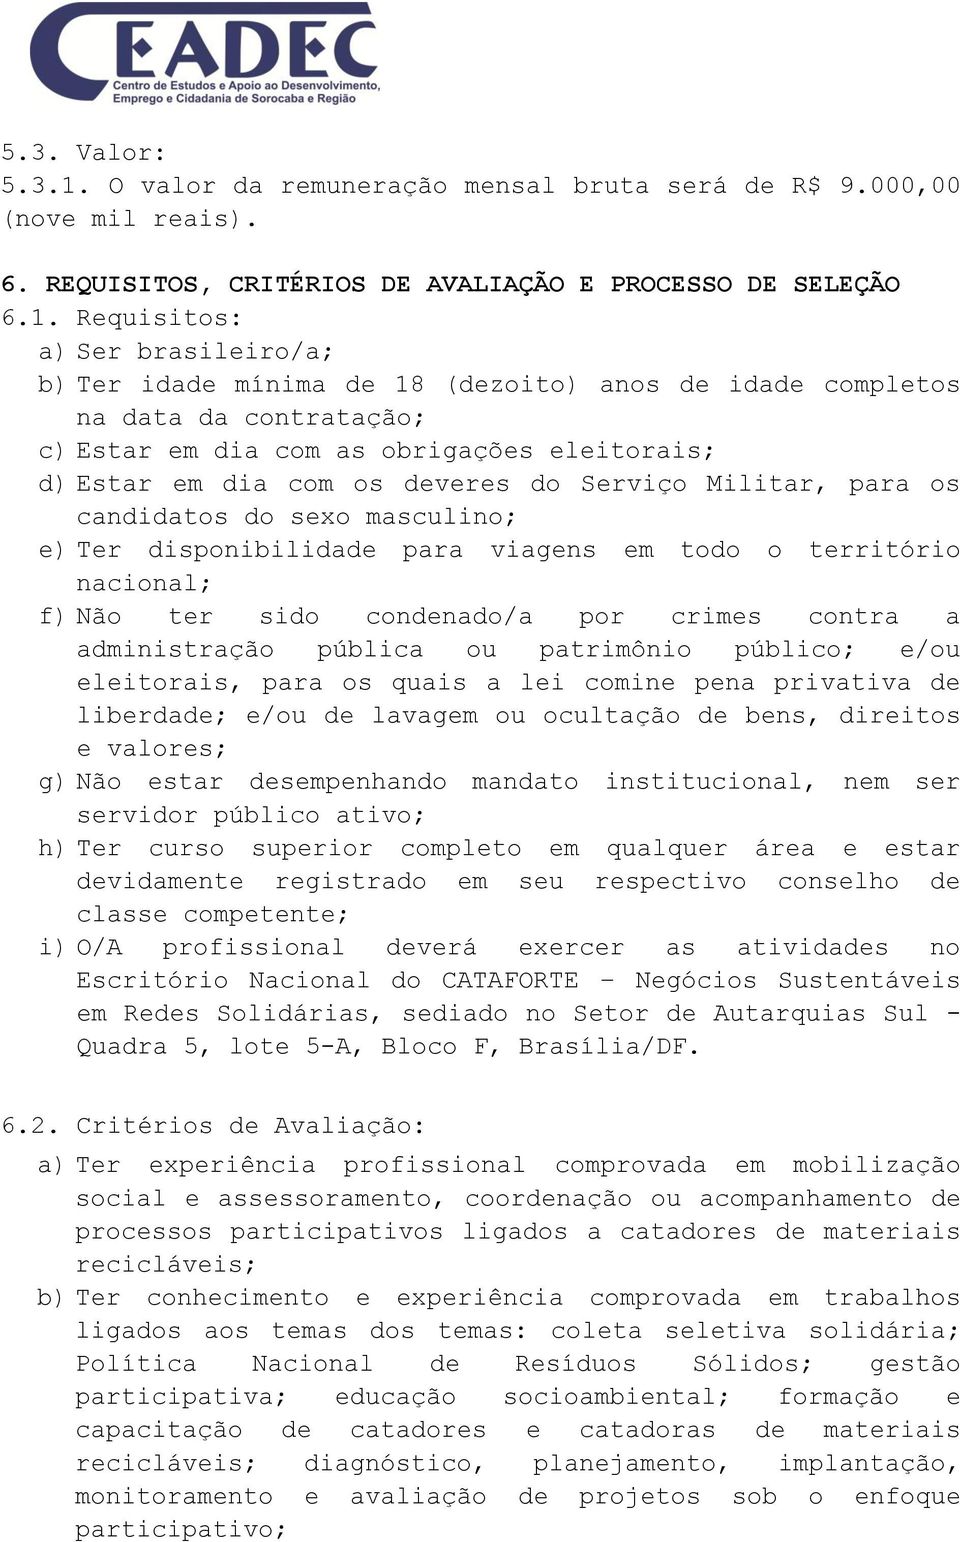 Requisitos: a) Ser brasileiro/a; b) Ter idade mínima de 18 (dezoito) anos de idade completos na data da contratação; c) Estar em dia com as obrigações eleitorais; d) Estar em dia com os deveres do